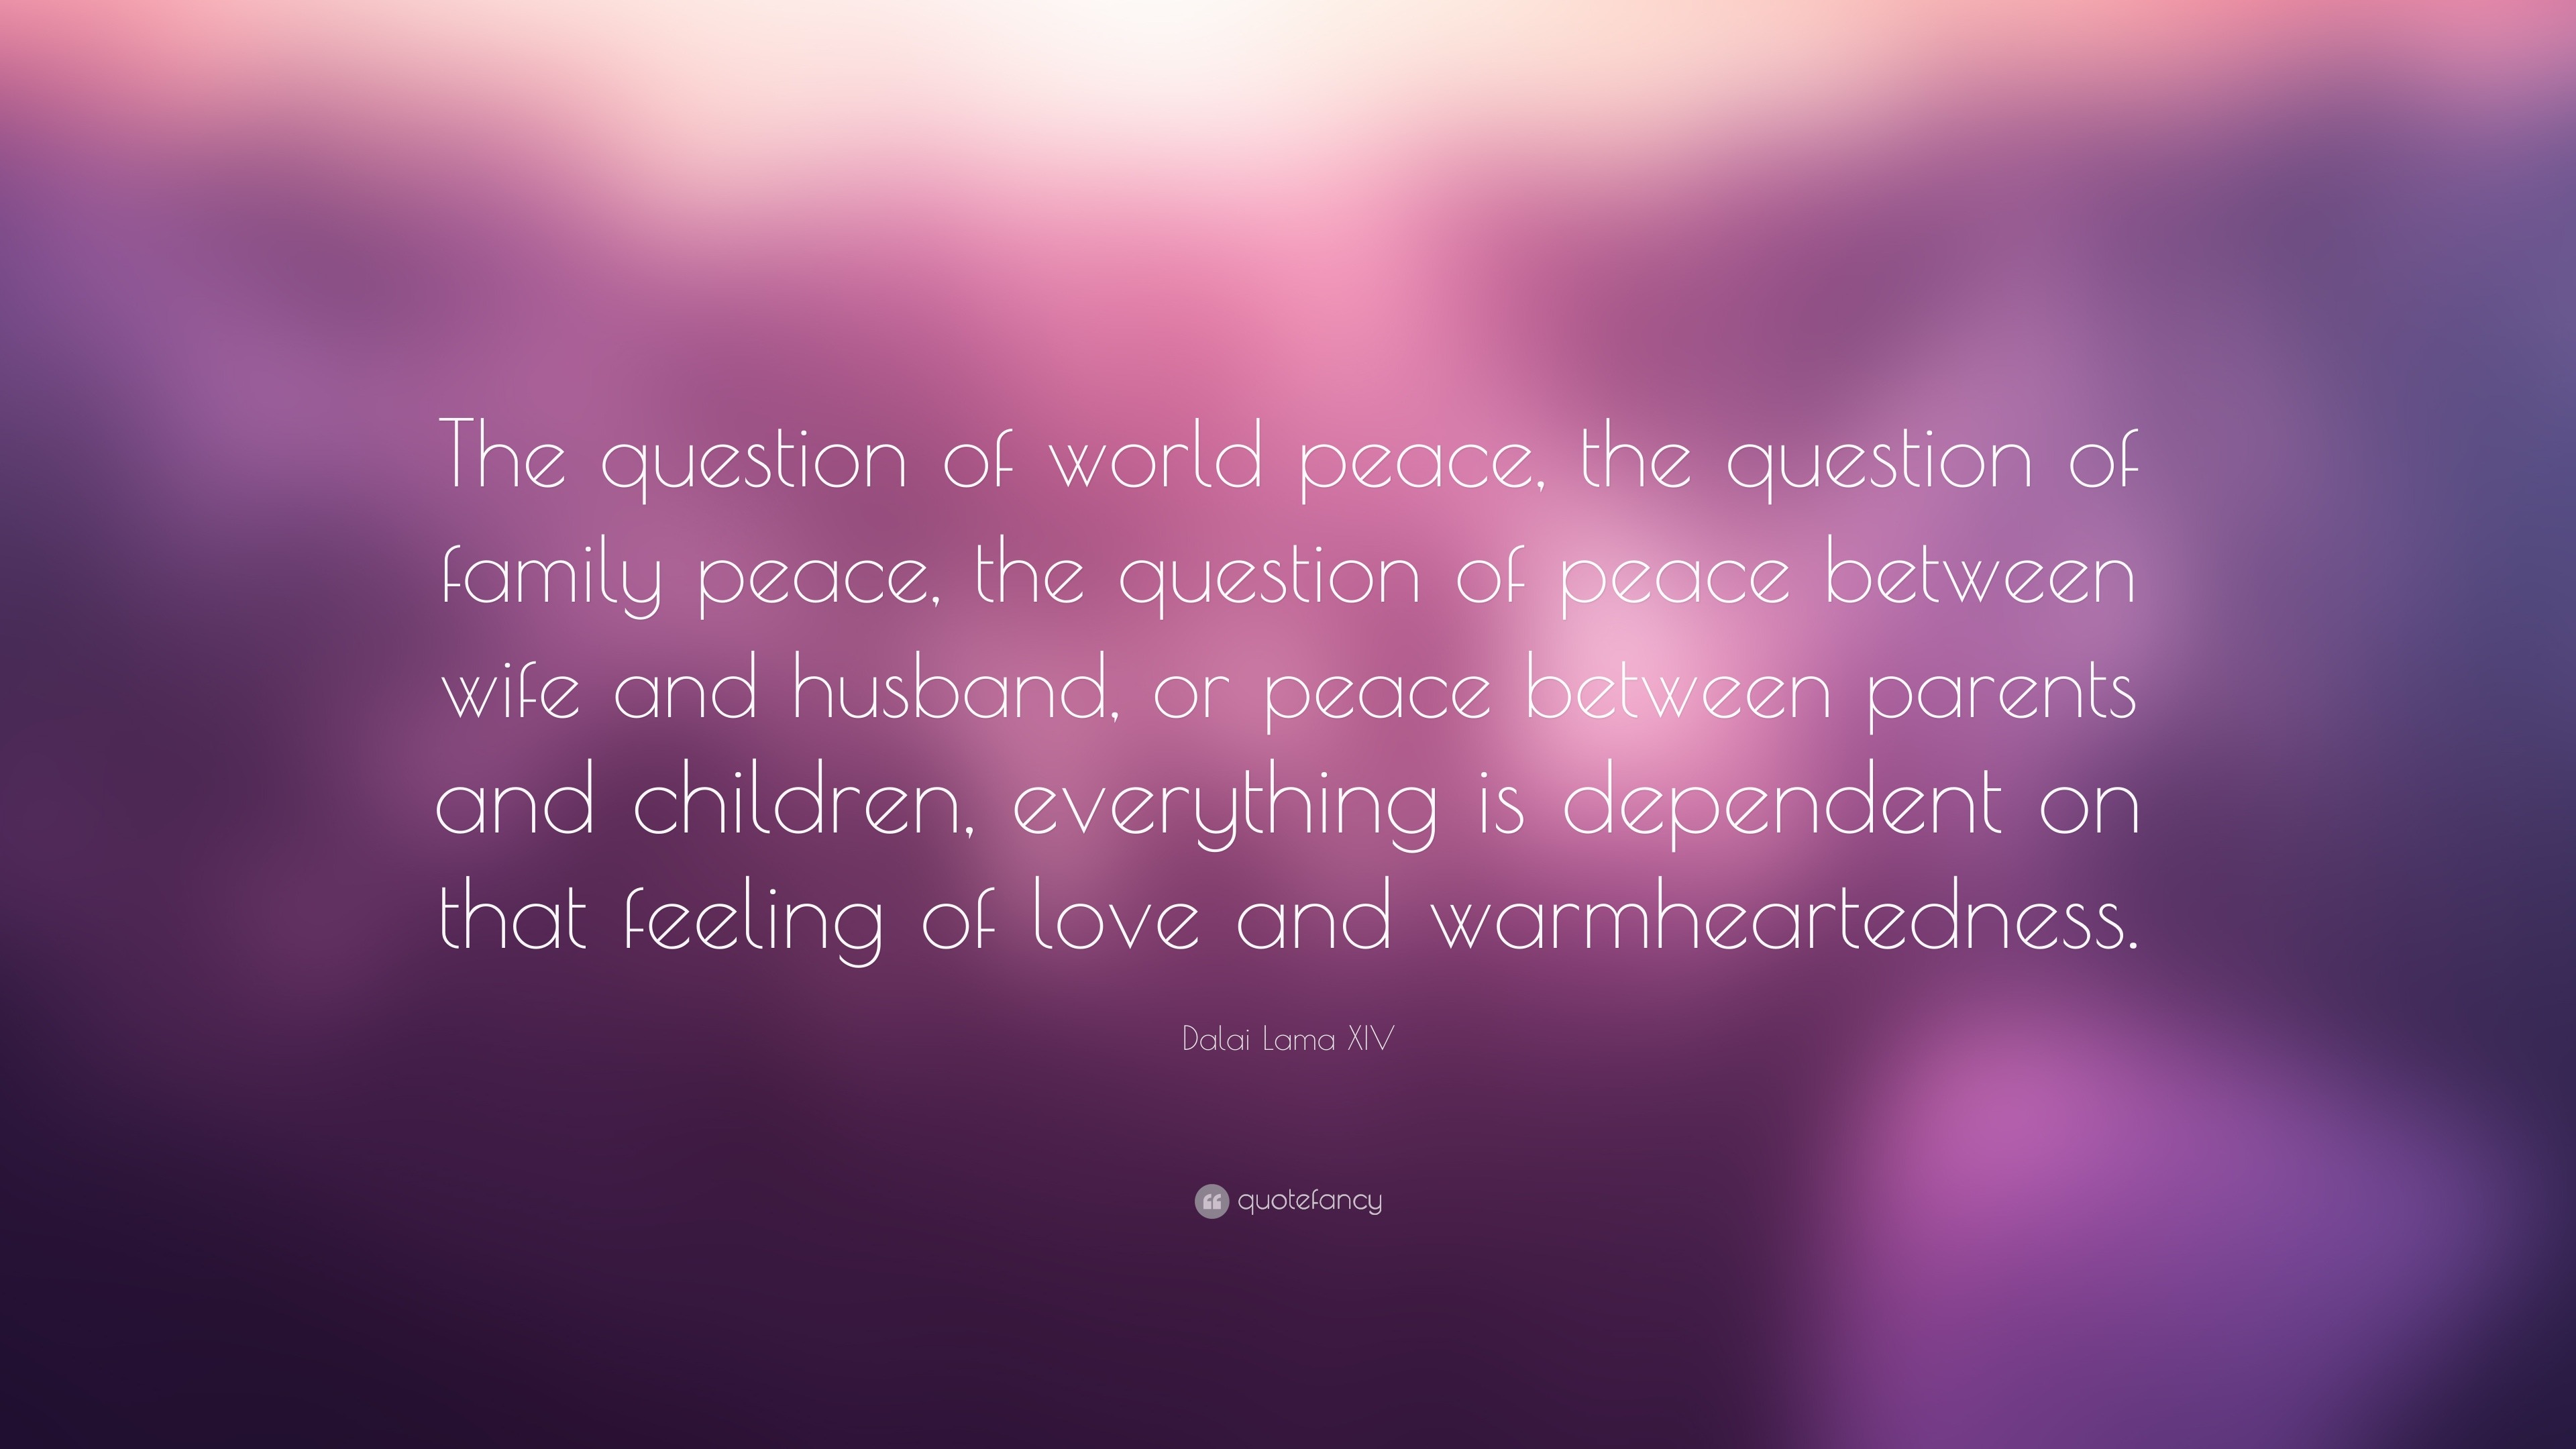 dalai lama quotes on world peace